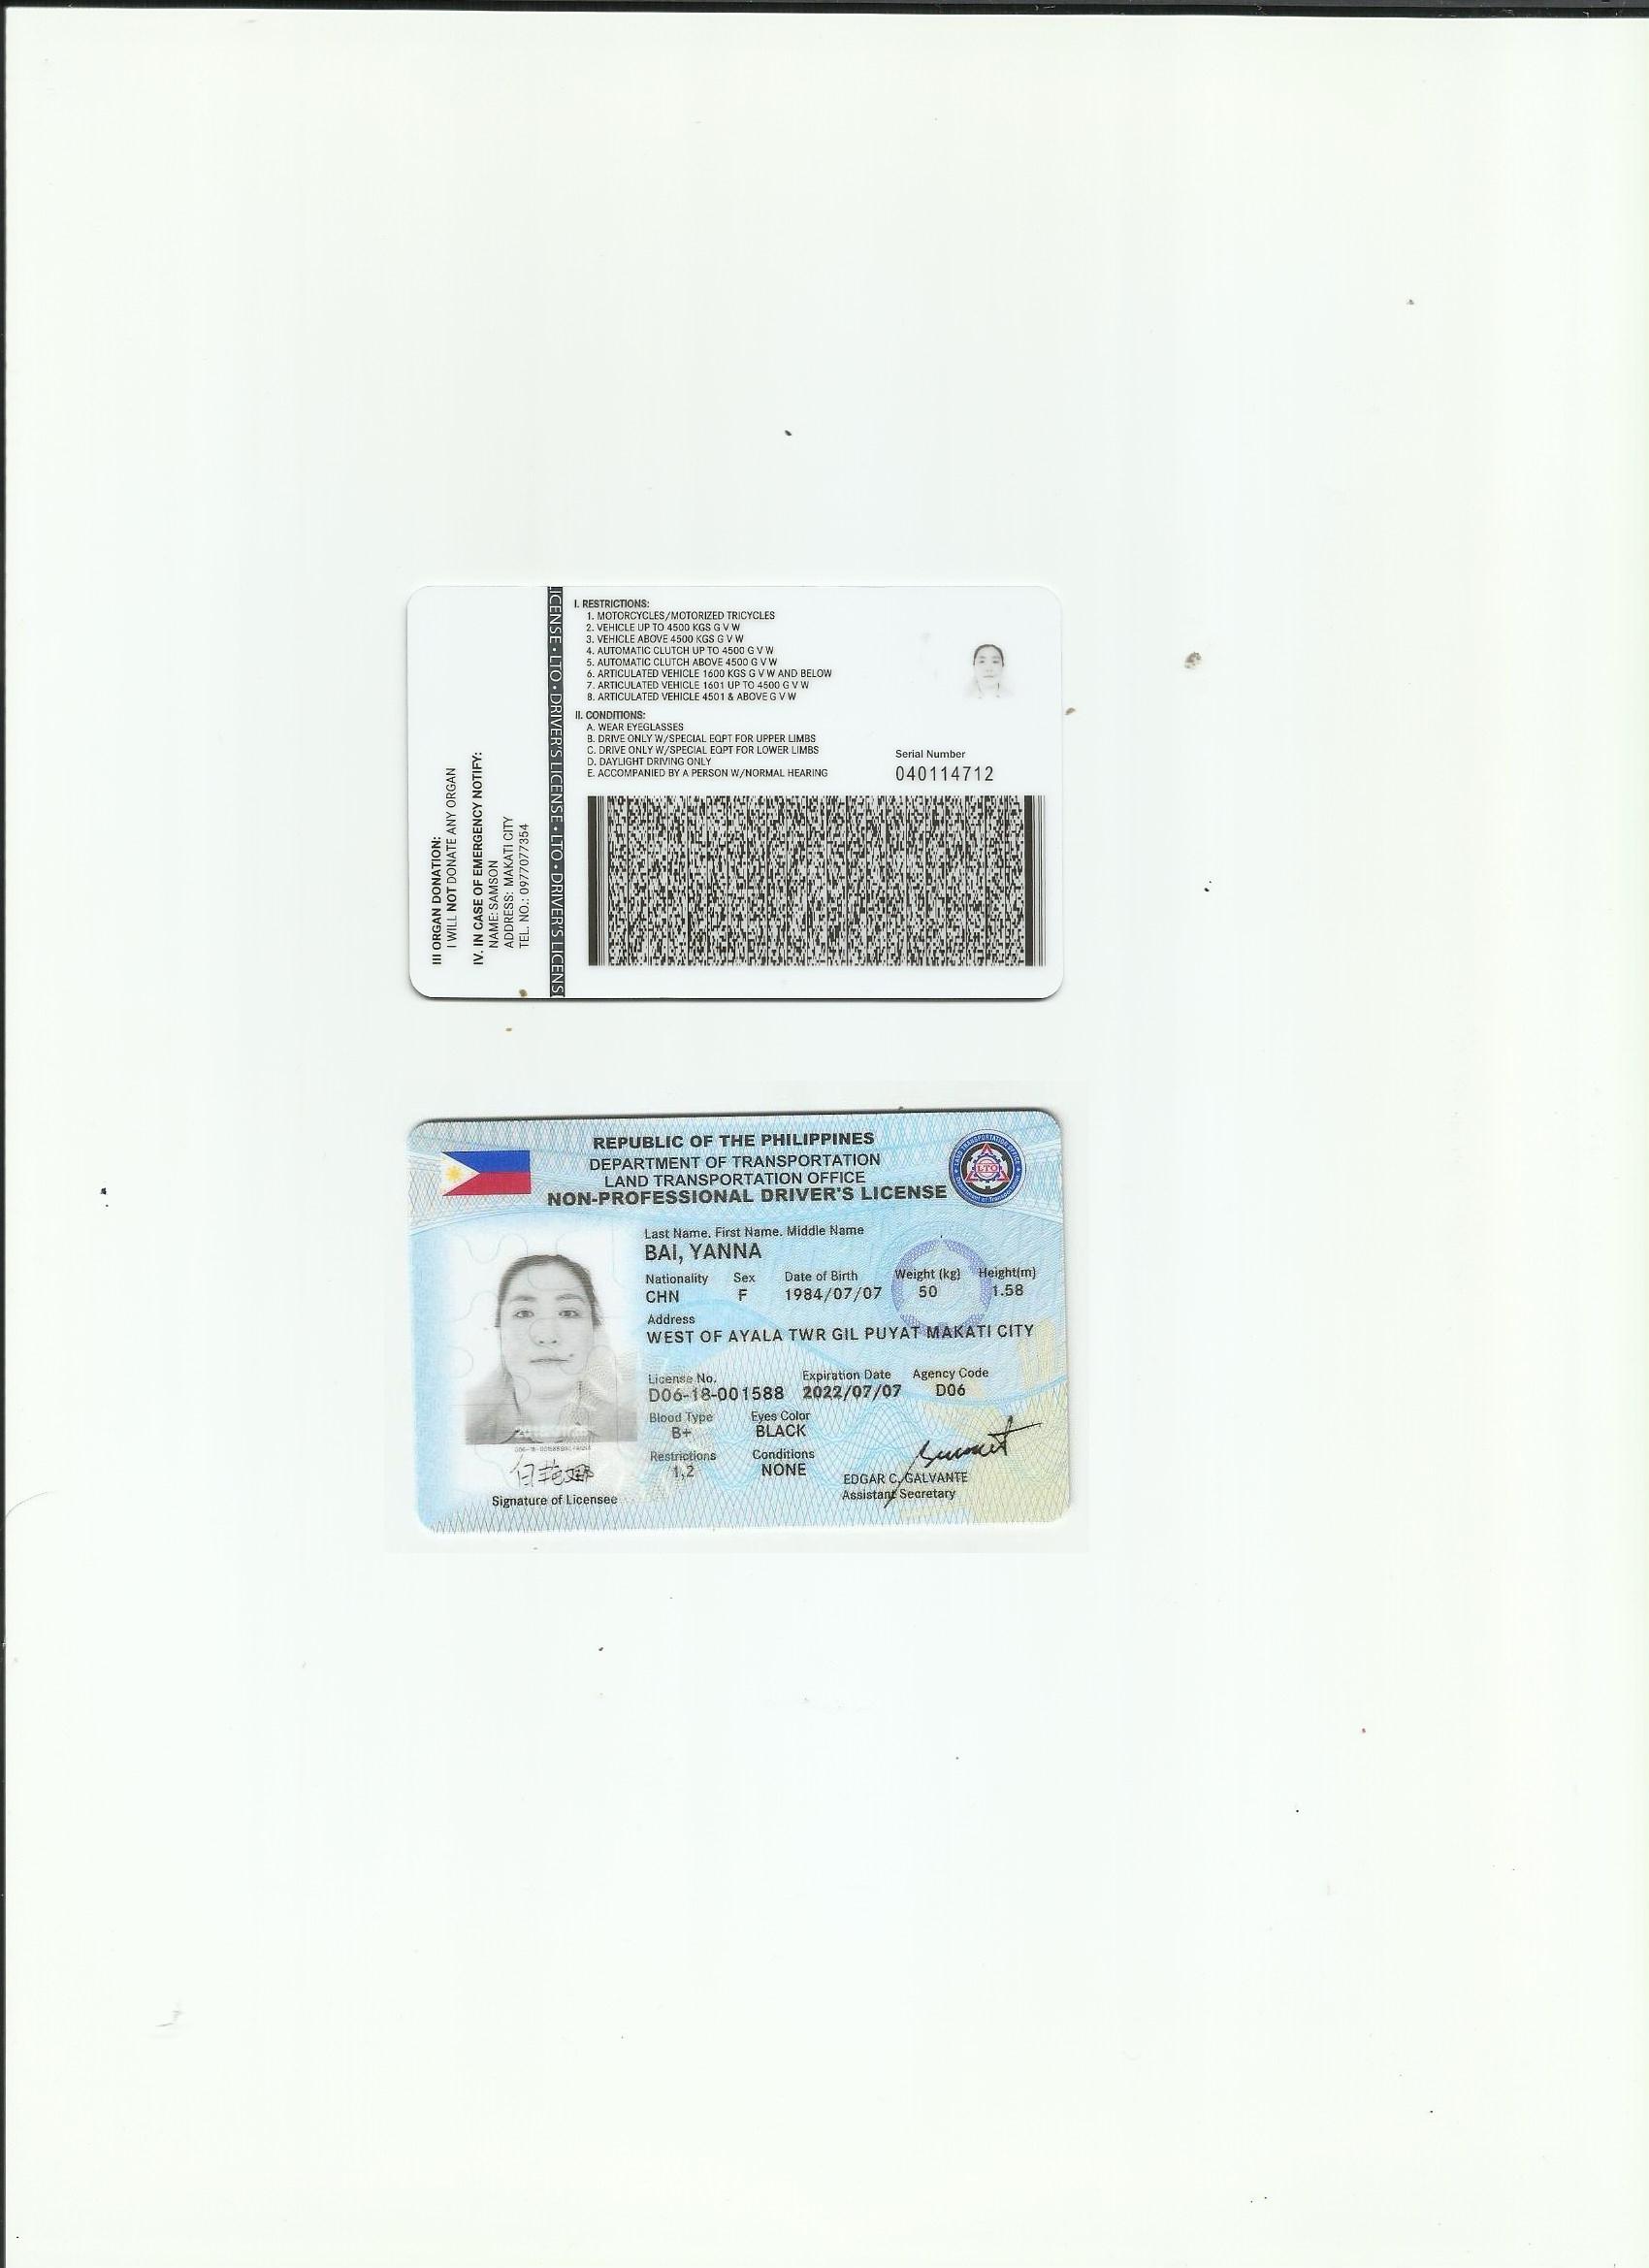 菲律宾驾照翻译模版-咸阳专业国外驾照翻译公司 方便国内驾照换证